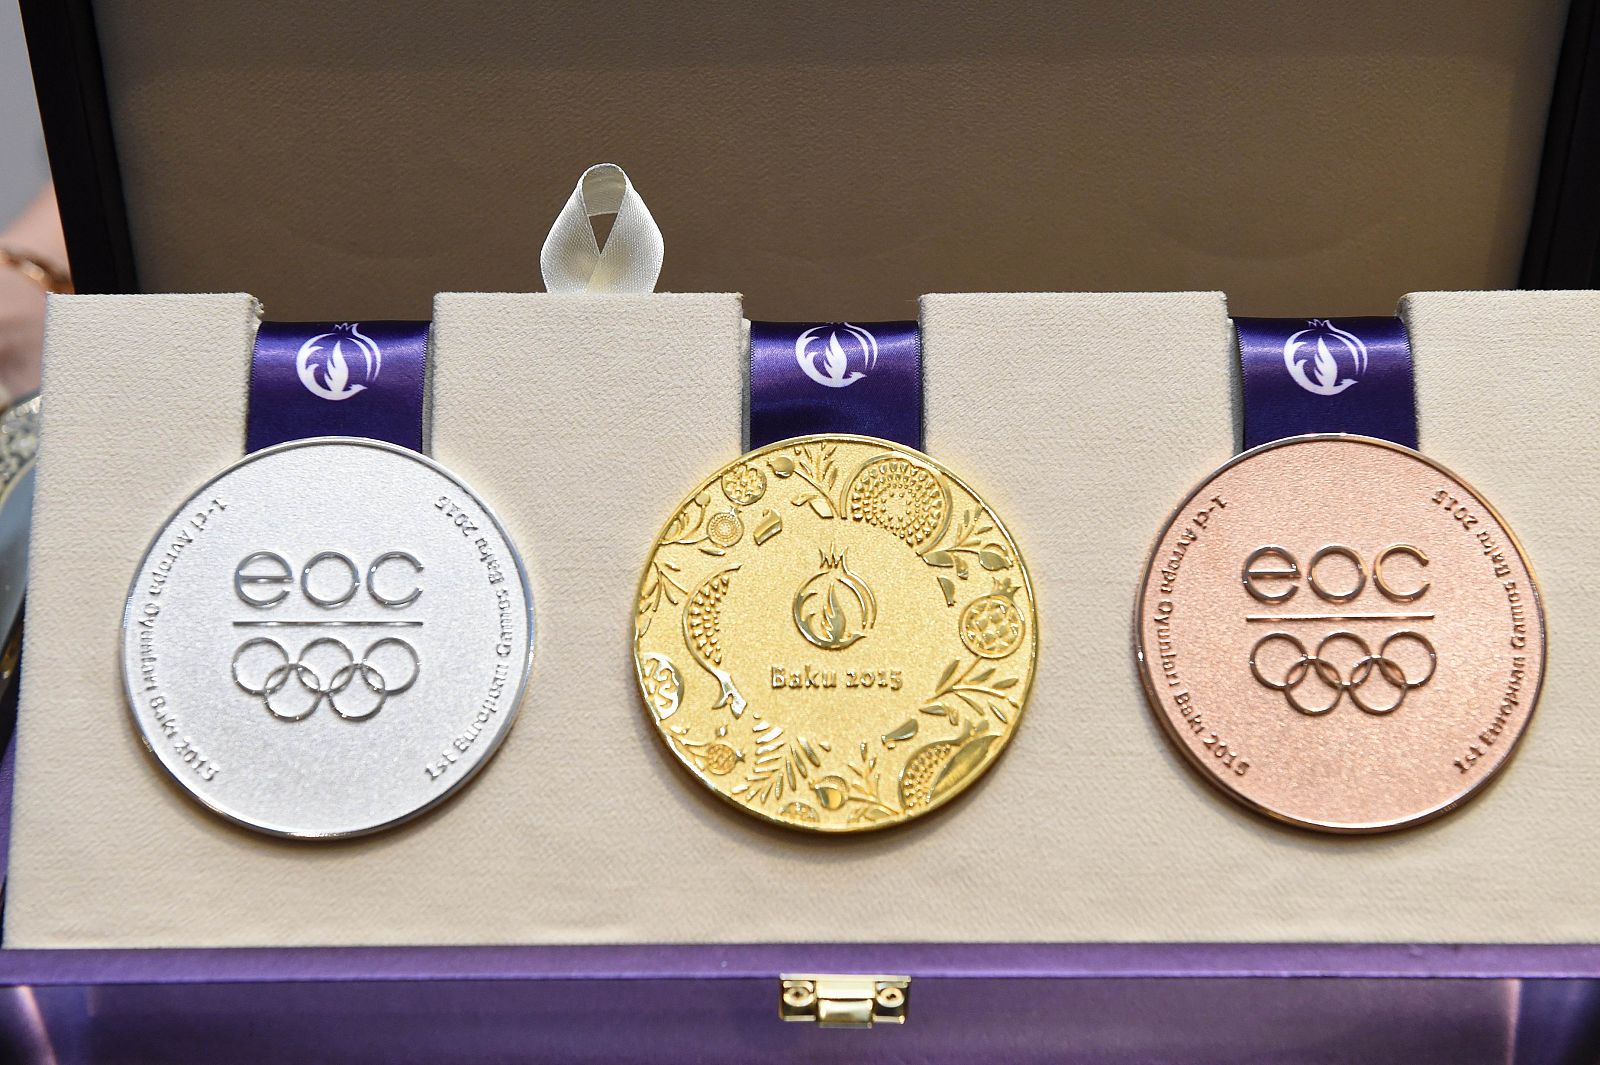 Imagen de las medallas de plata, oro y bronce de los I Juegos Europeos de Bakú 2015.